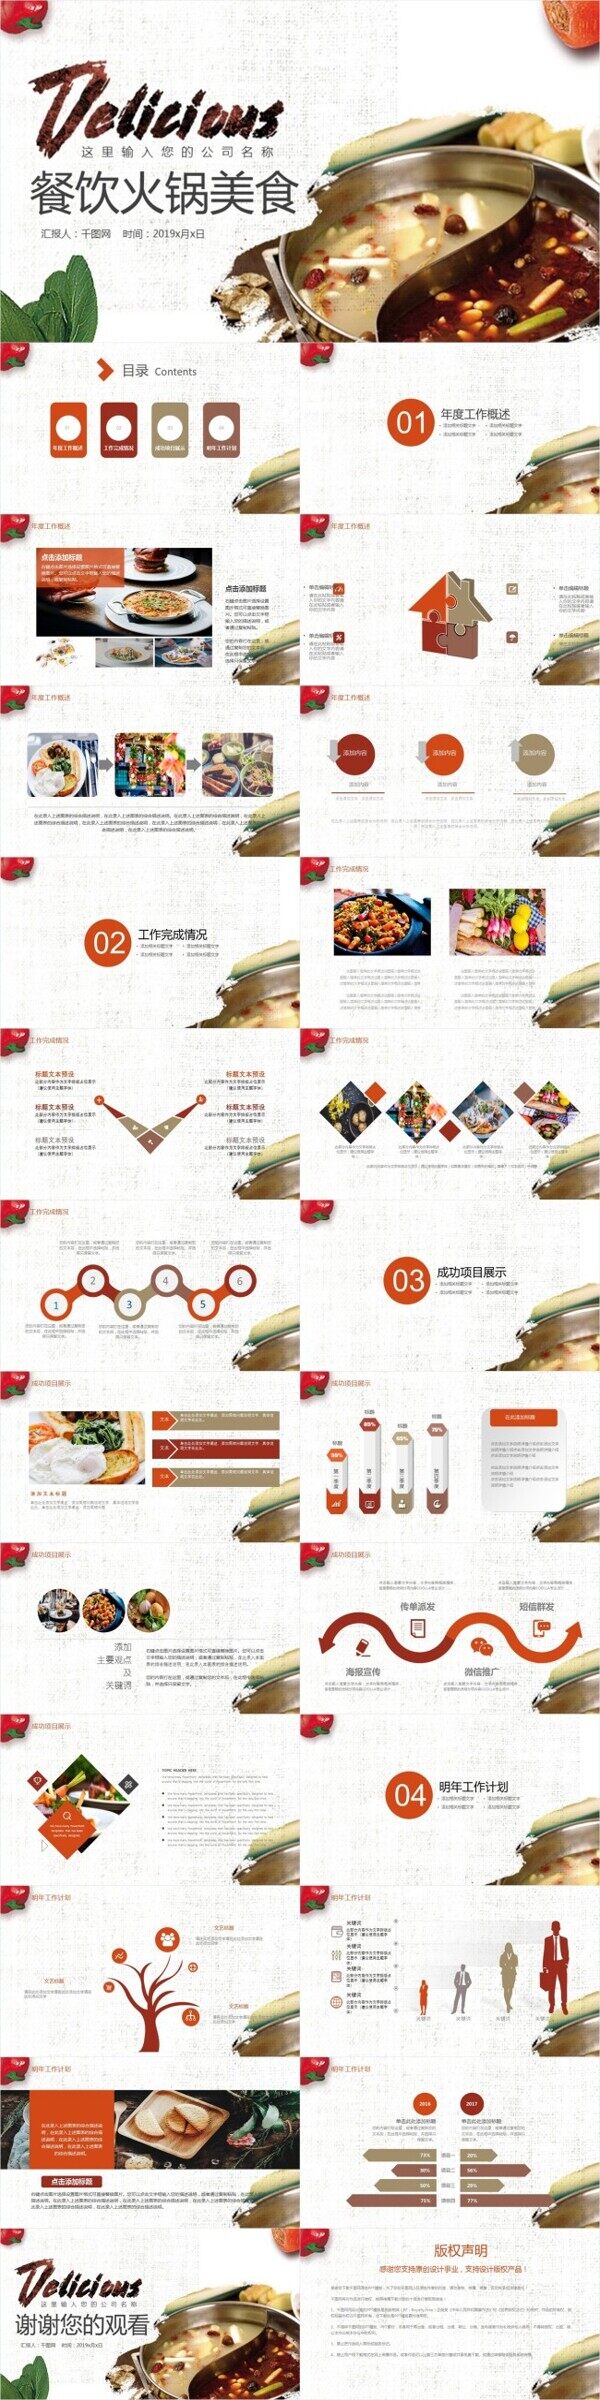 中国传统美食文化火锅饮食餐饮PPT模板